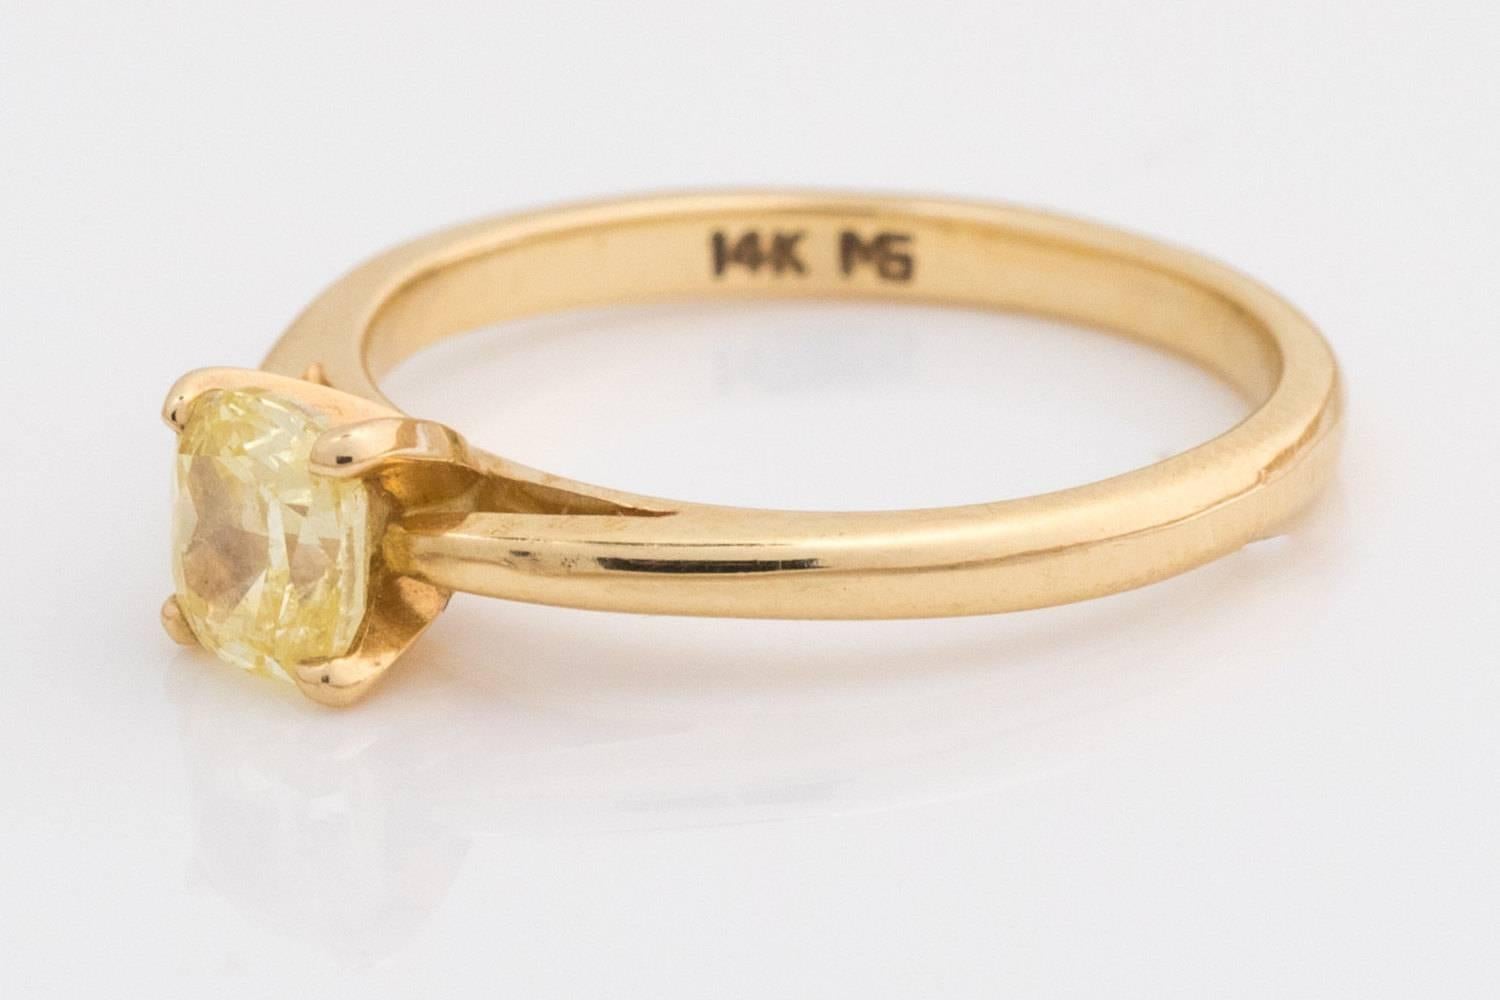 Bague de fiançailles en diamant naturel de couleur jaune canari

Type de métal : Or jaune 14 carats
Taille de la bague : 4.5 (redimensionnable 2-3 tailles au dessus ou en dessous)
Poids : 1,8 g
Hauteur de la bande : 5,5 mm

Détails du diamant